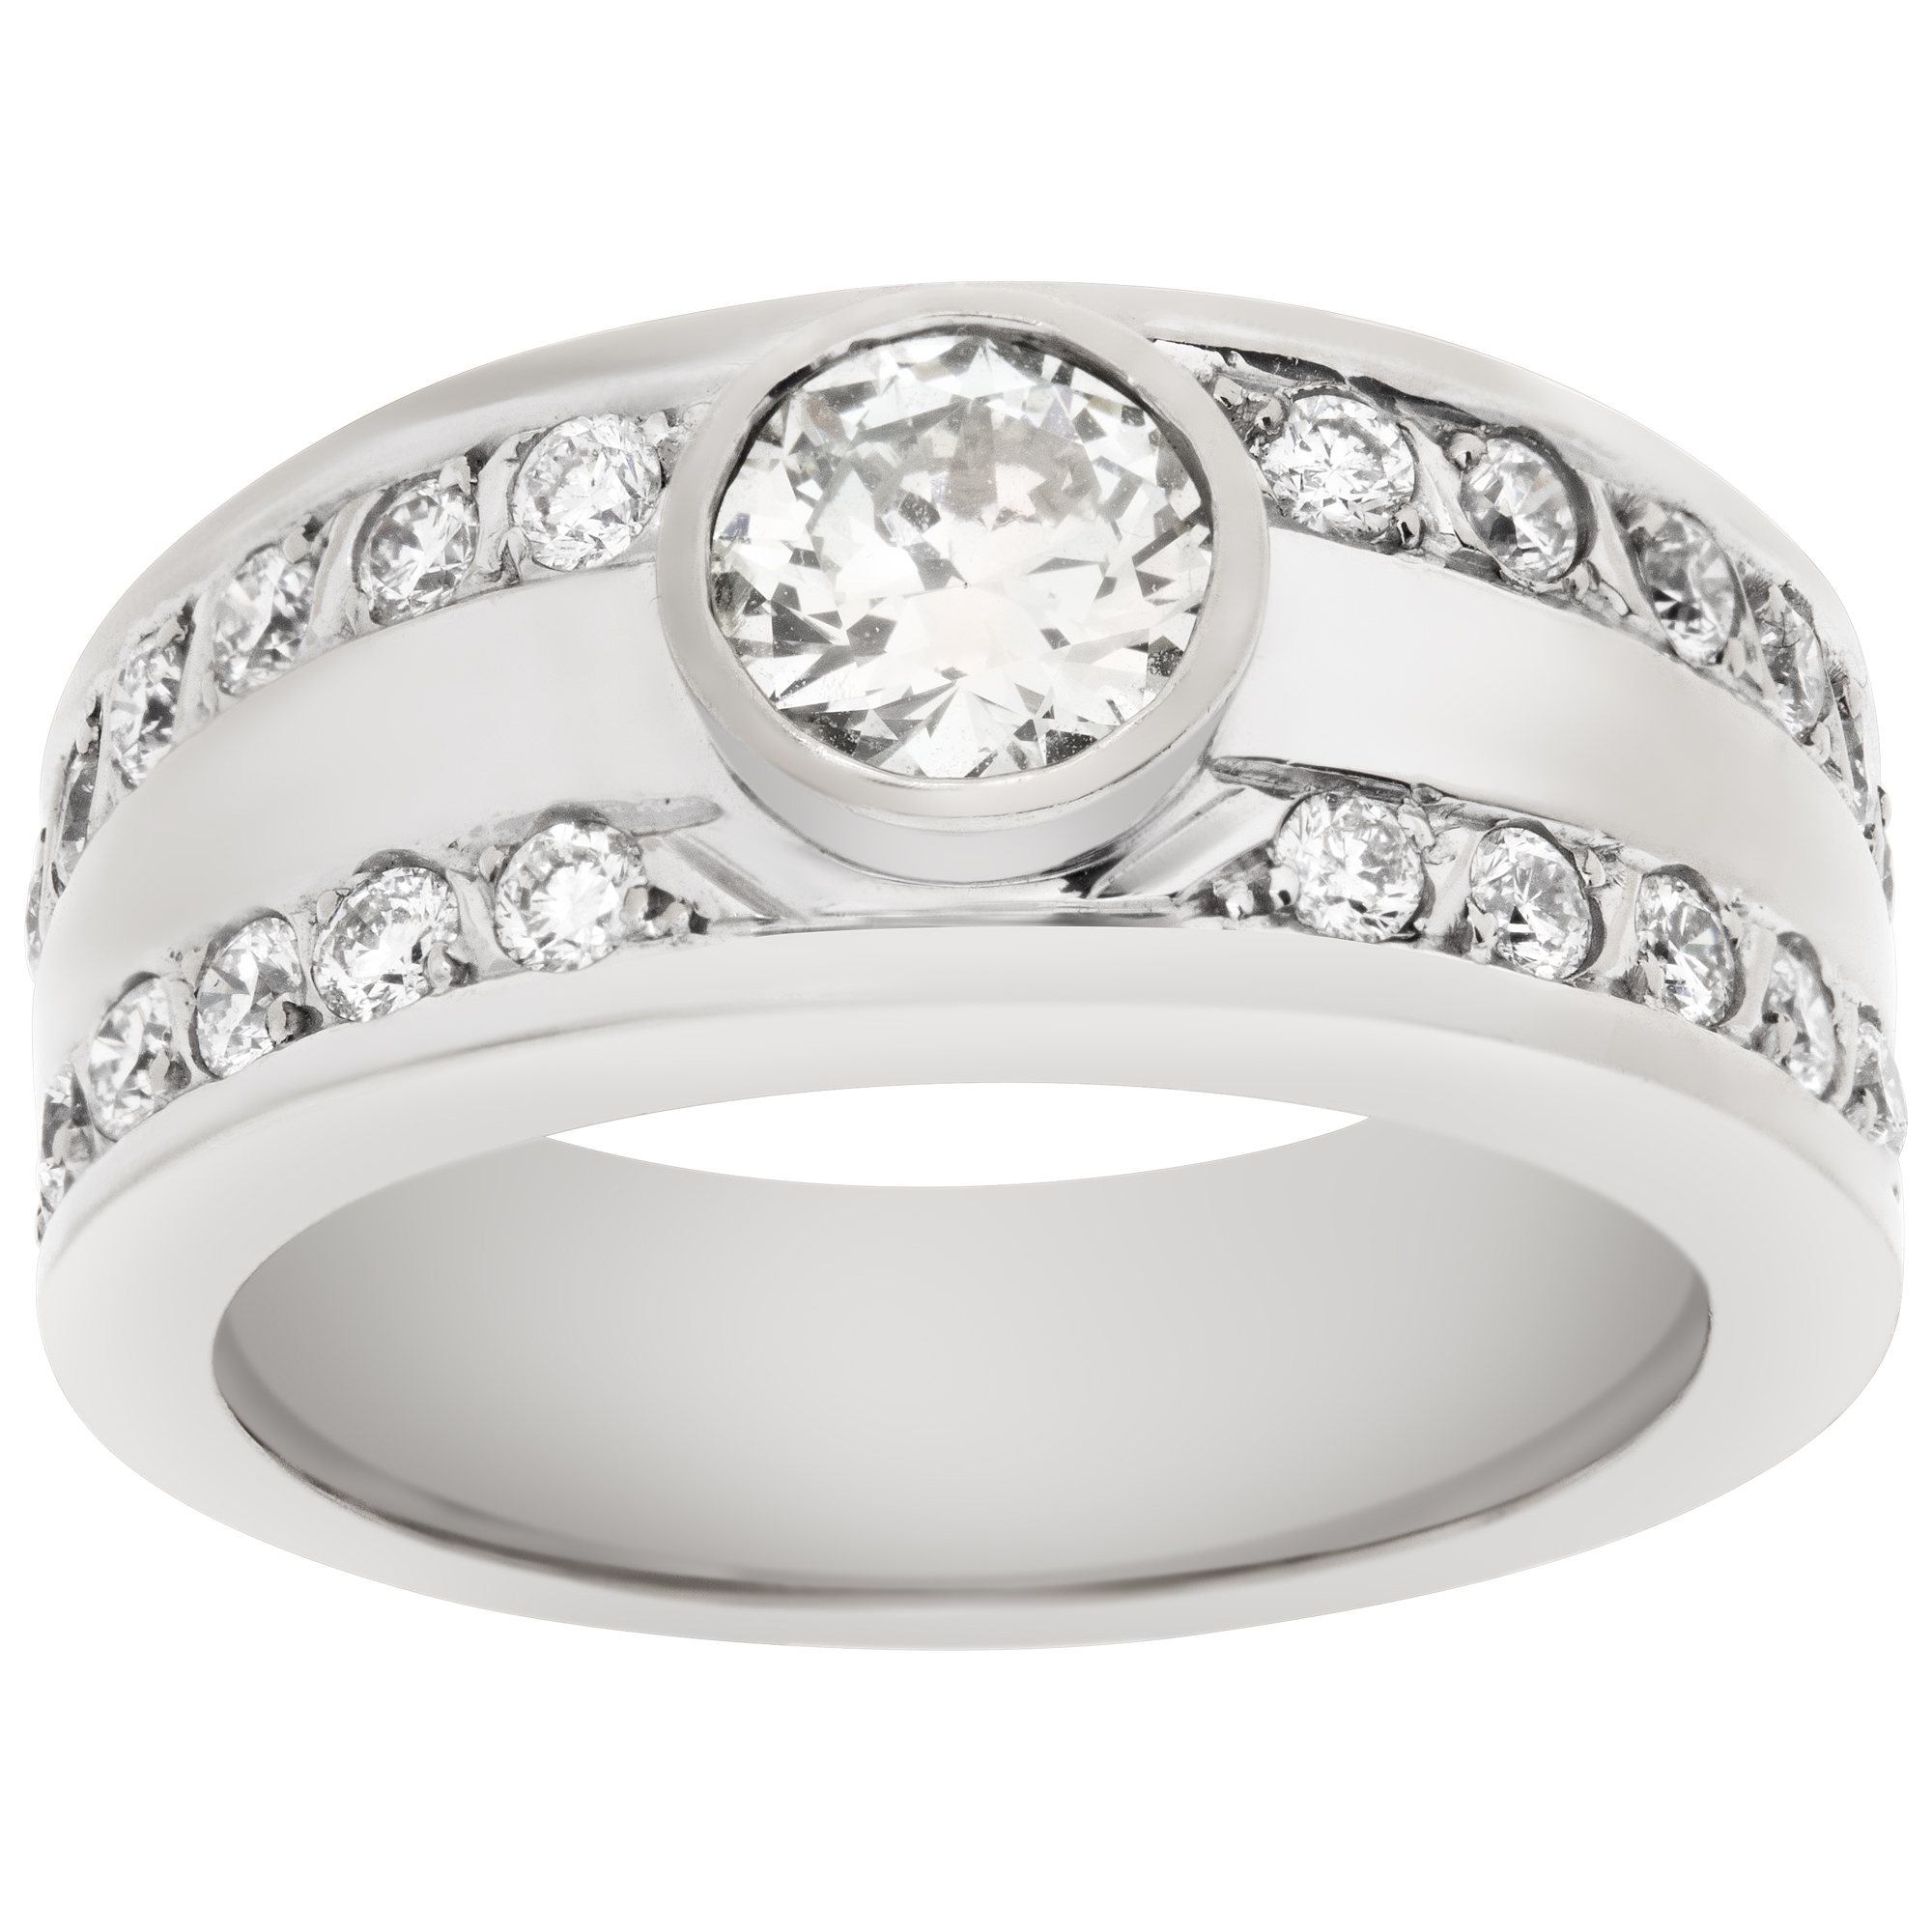 Gents diamond ring in 18k white gold. 0.75 carat center diamond (K-L, SI1)